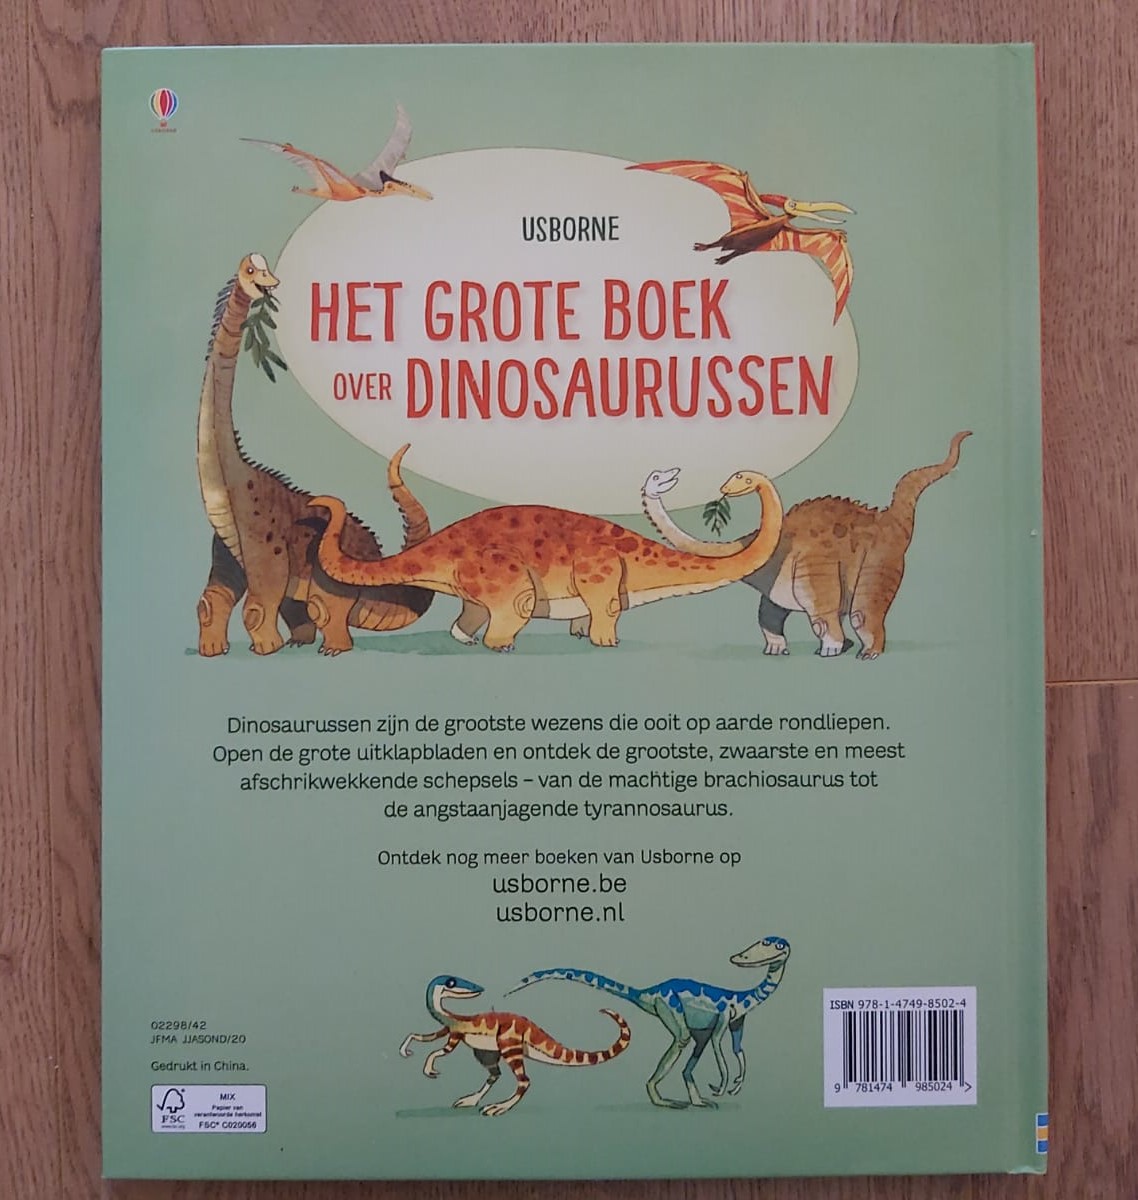 Leerling boiler Plasticiteit Het grote boek over dinosaurussen, een uitklapboek van Usborne